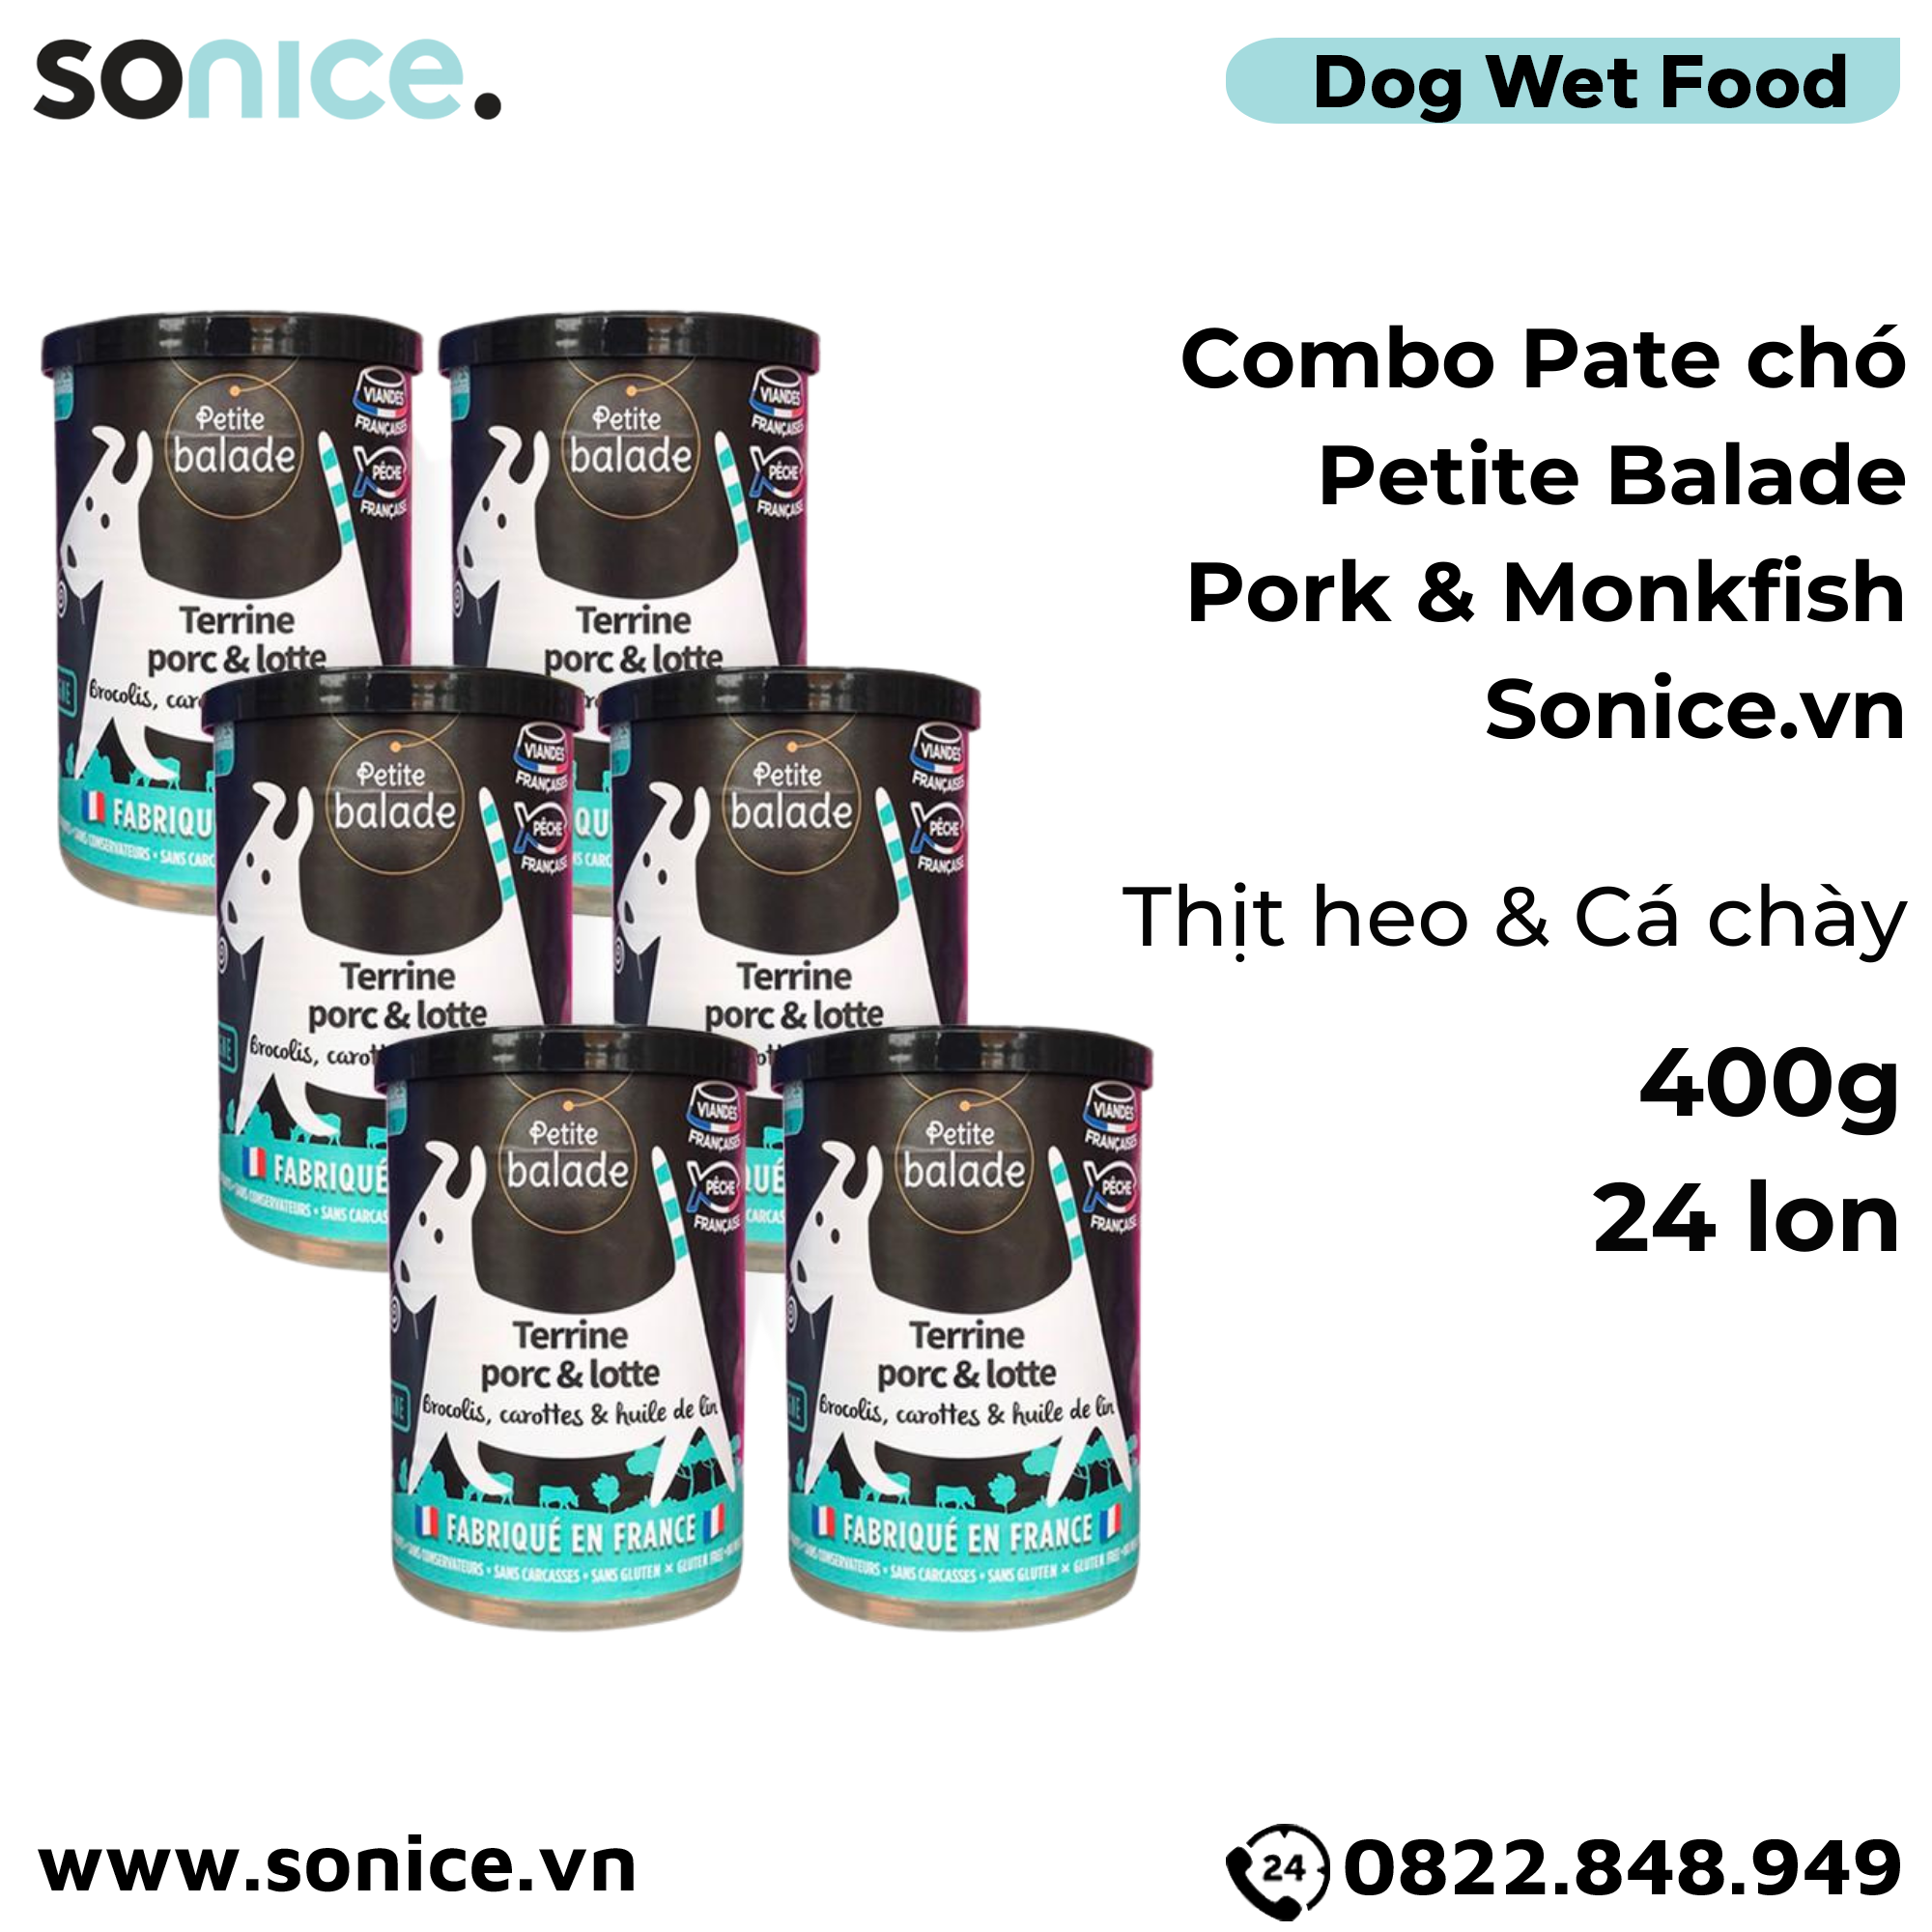  Combo Pate chó Petite Balade Pork & Monkfish 400g - 24 lon - Thịt heo và cá chày SONICE. 